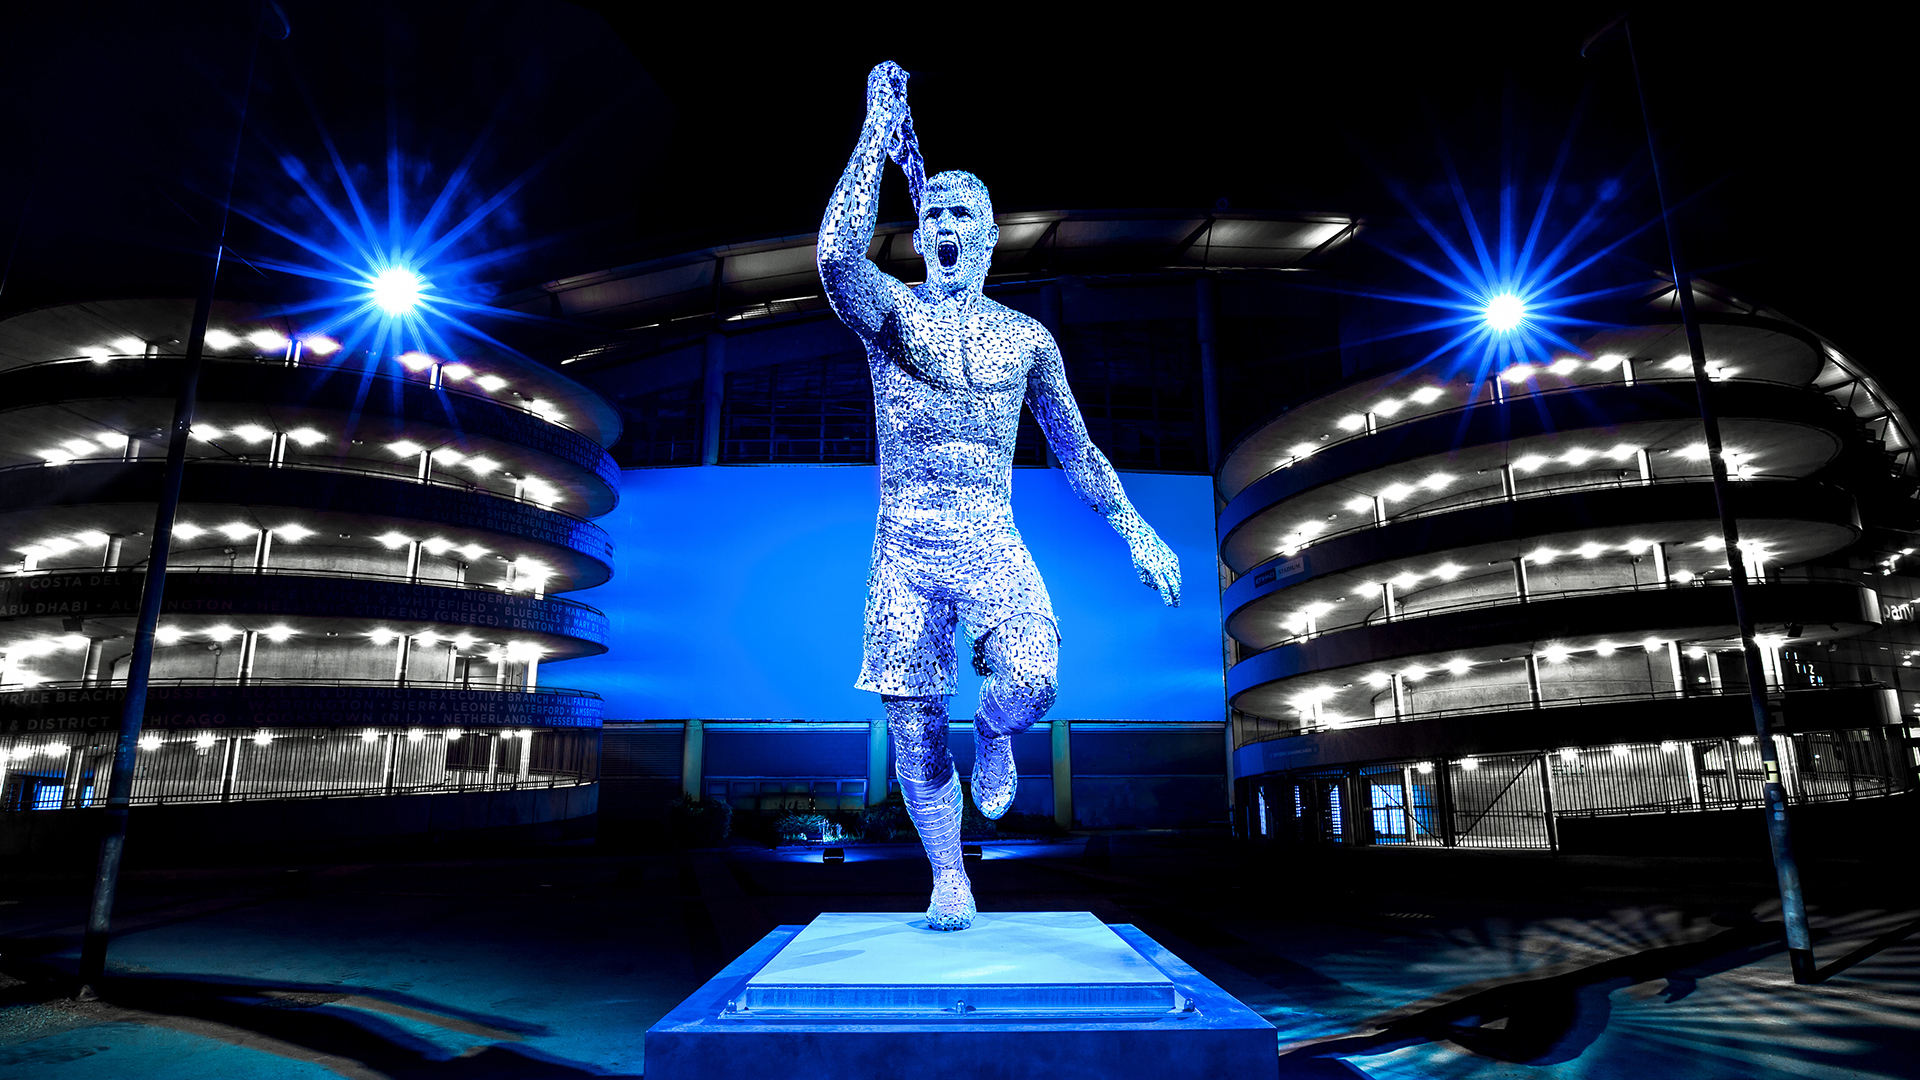 Patung Sergio Aguero: Manchester City UNGKAPKAN Patung Besar Sergio Aguero untuk Diabadikan GOL 93:20 - Periksa Gambar